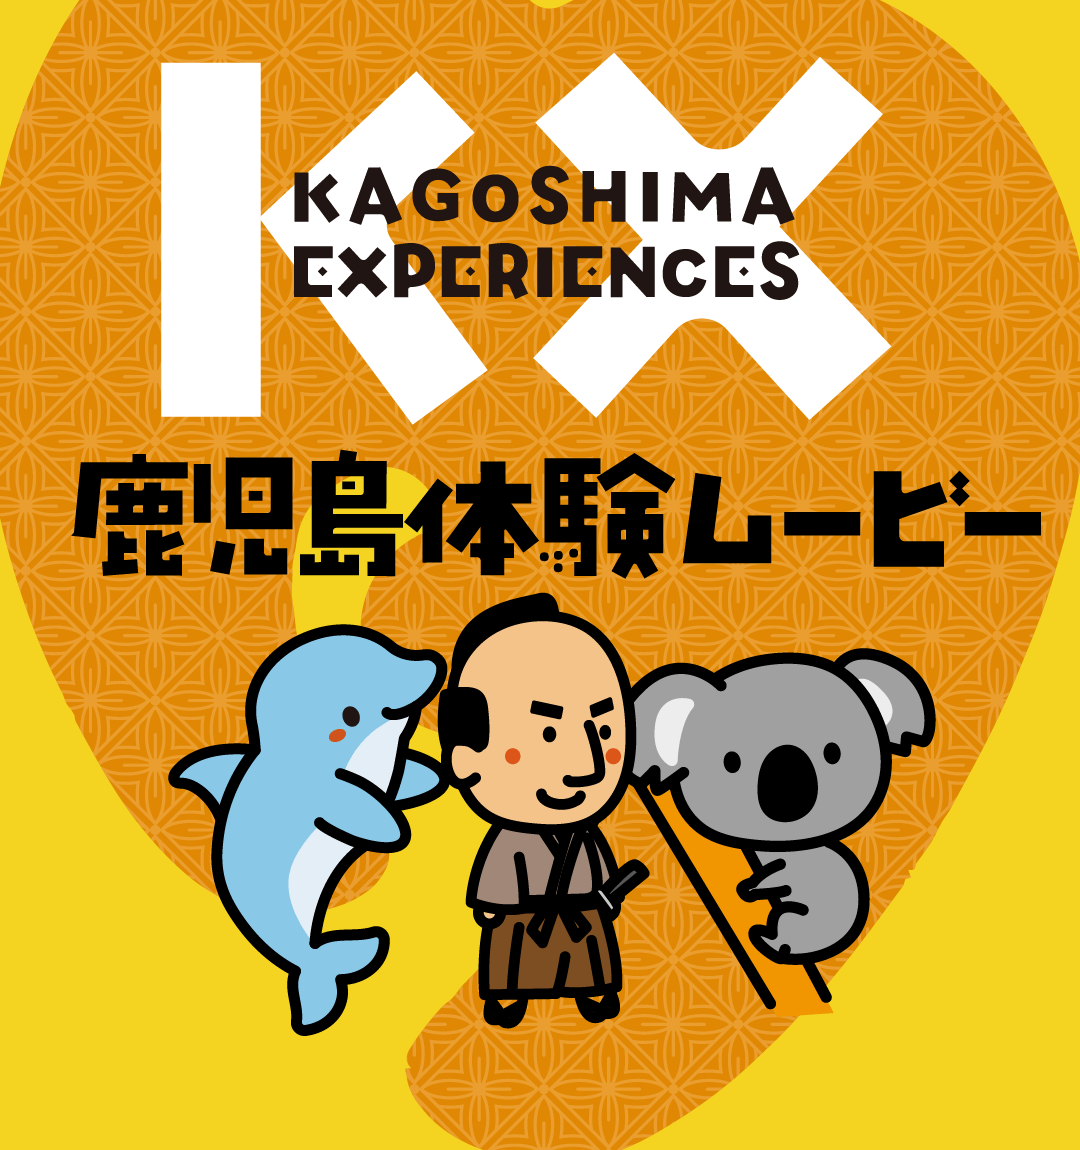 KAGOSHIMA EXPERIENCES Videos & Info